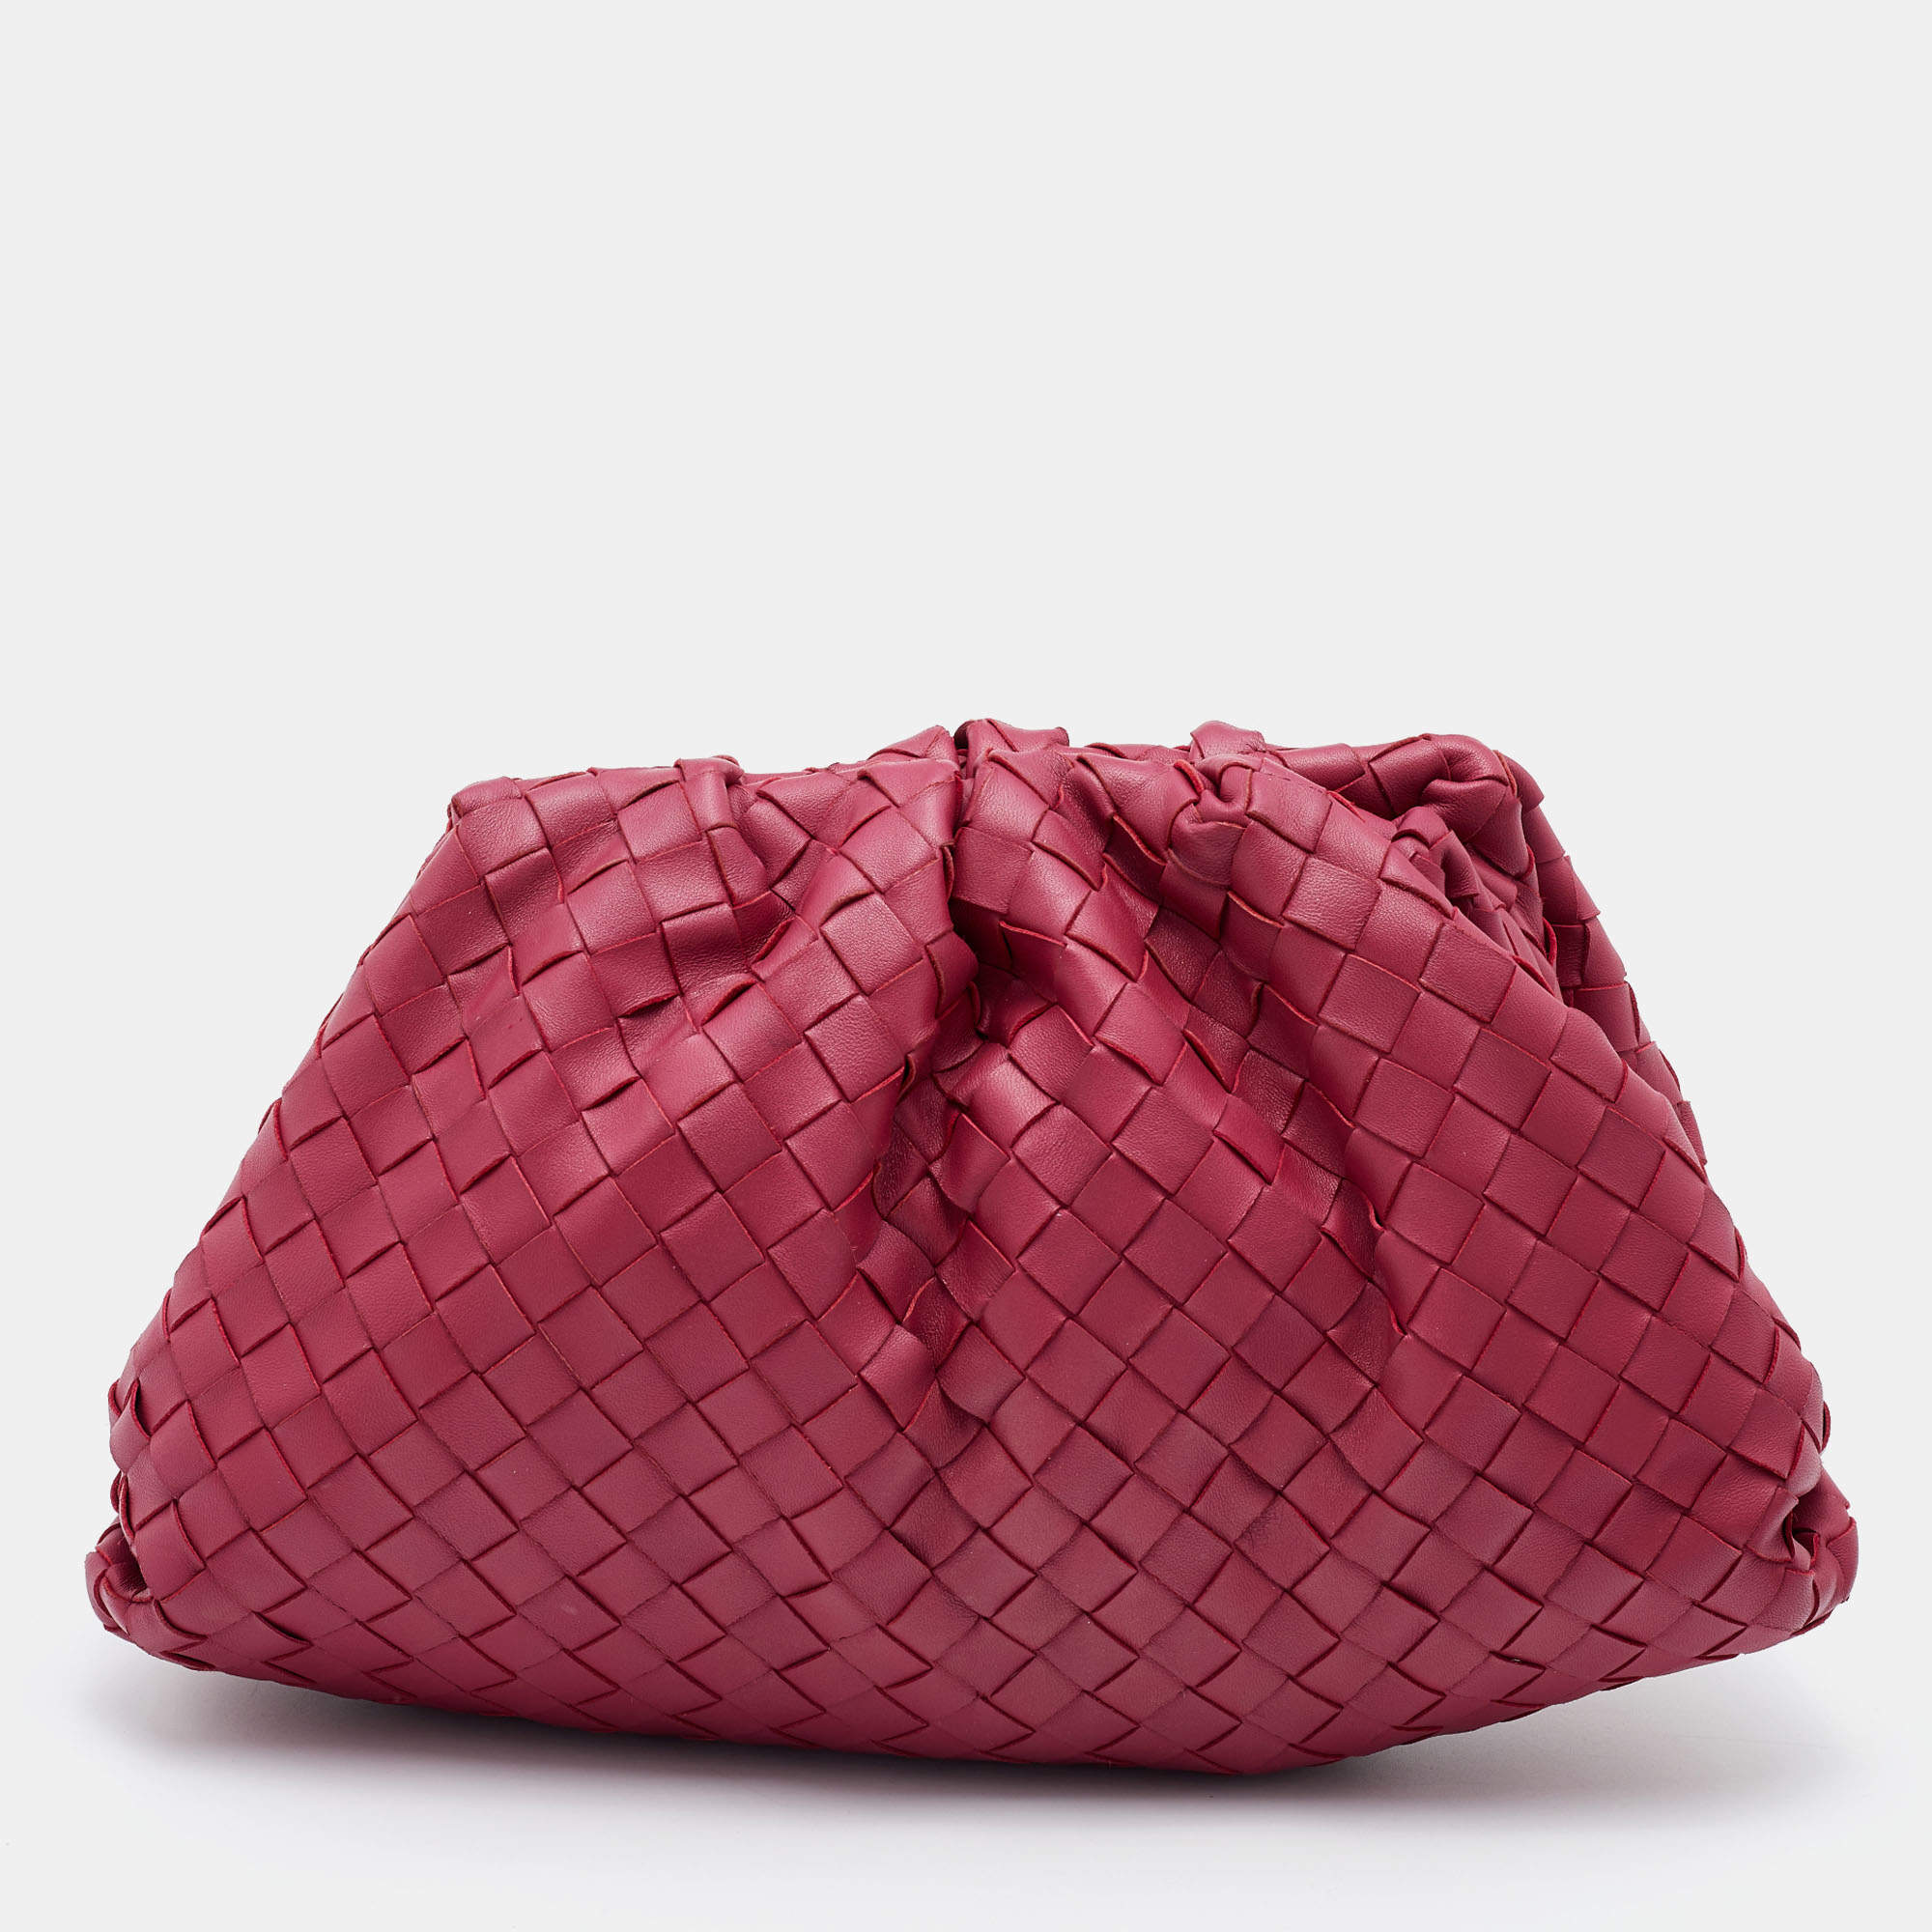 BOTTEGA VENETA: The mini pouch clutch in leather - Red